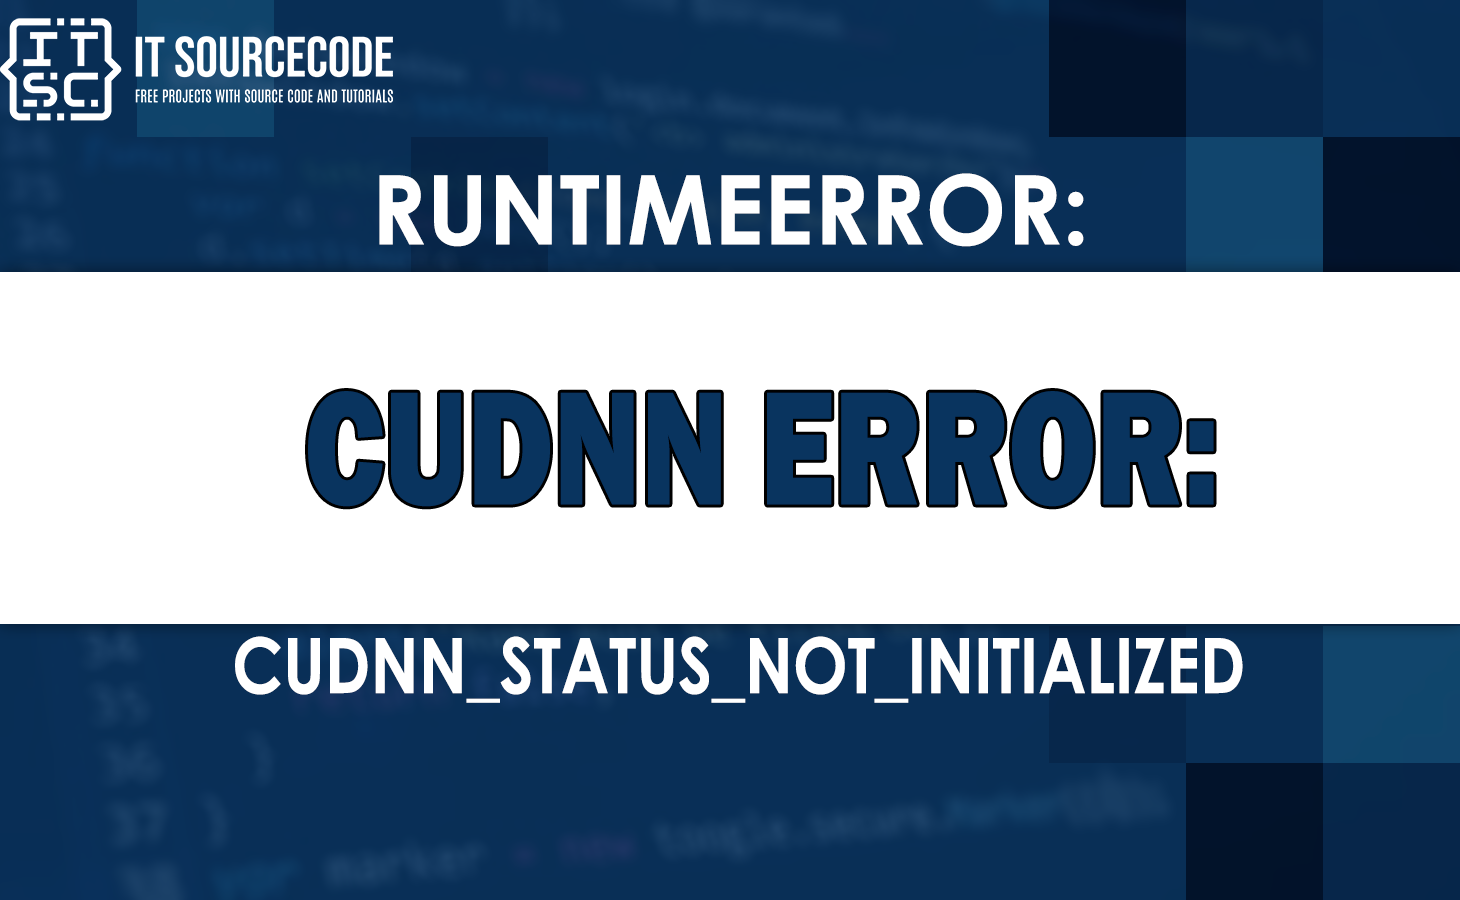 runtimeerror cudnn error cudnn_status_not_initialized